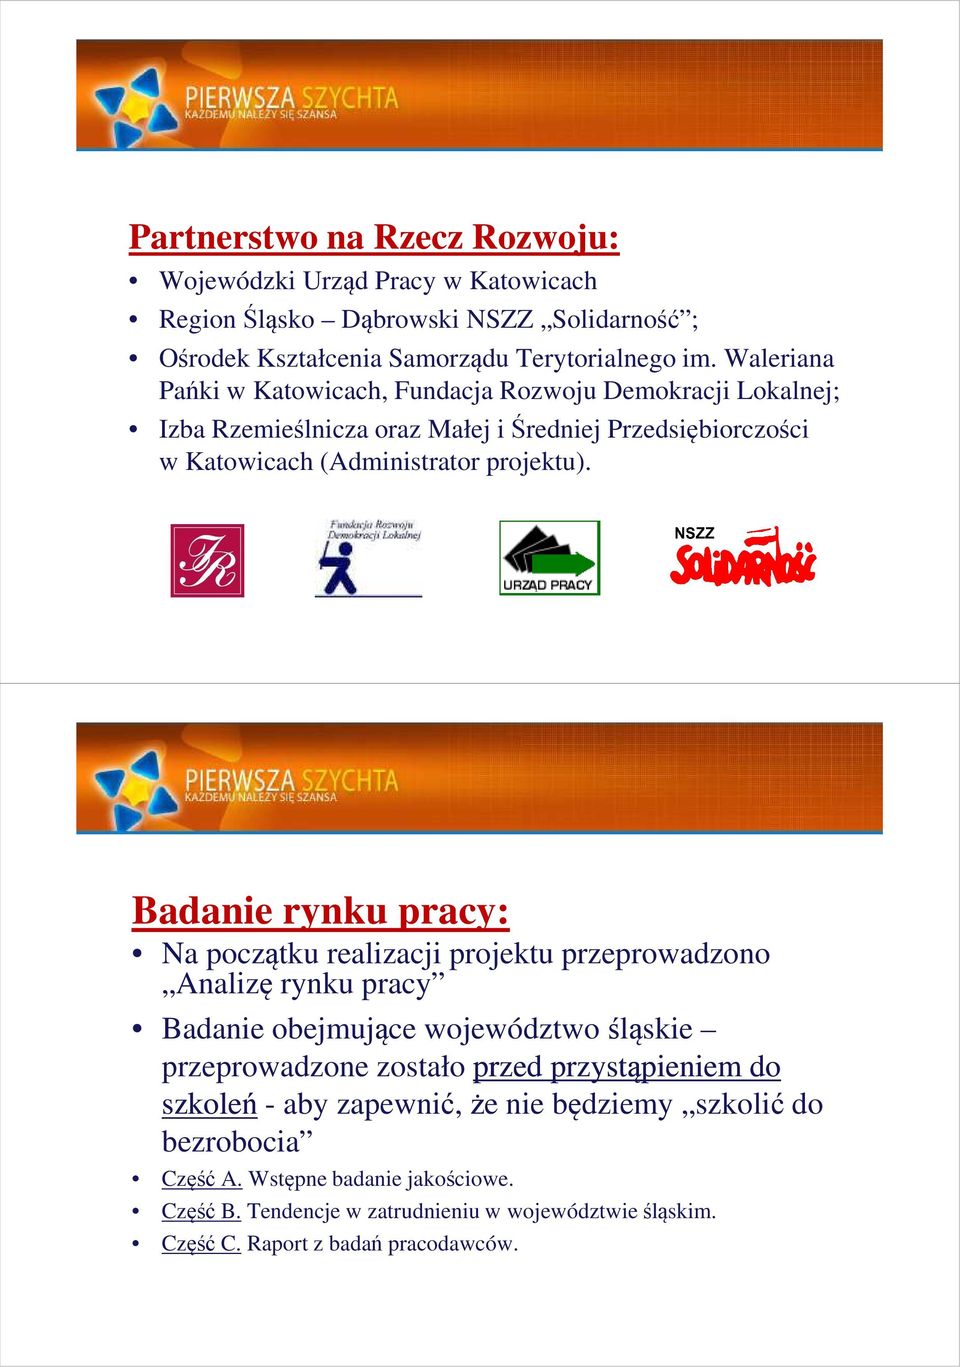 Badanie rynku pracy: Na początku realizacji projektu przeprowadzono Analizę rynku pracy Badanie obejmujące województwo śląskie przeprowadzone zostało przed przystąpieniem